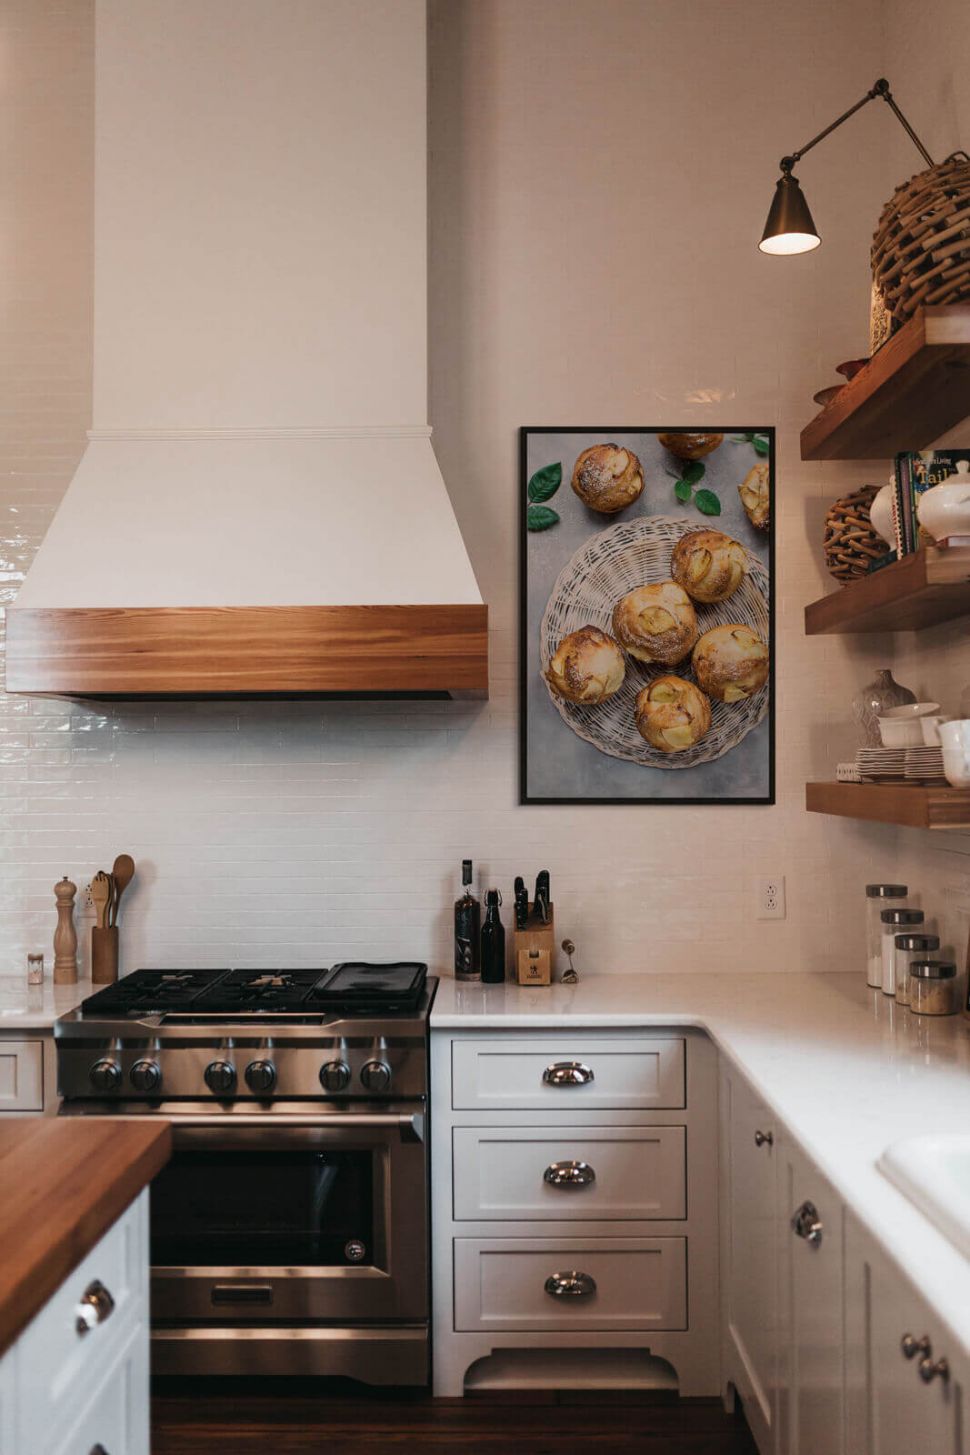 Plakat z muffinkami powieszony w czarnej ramie w kuchni